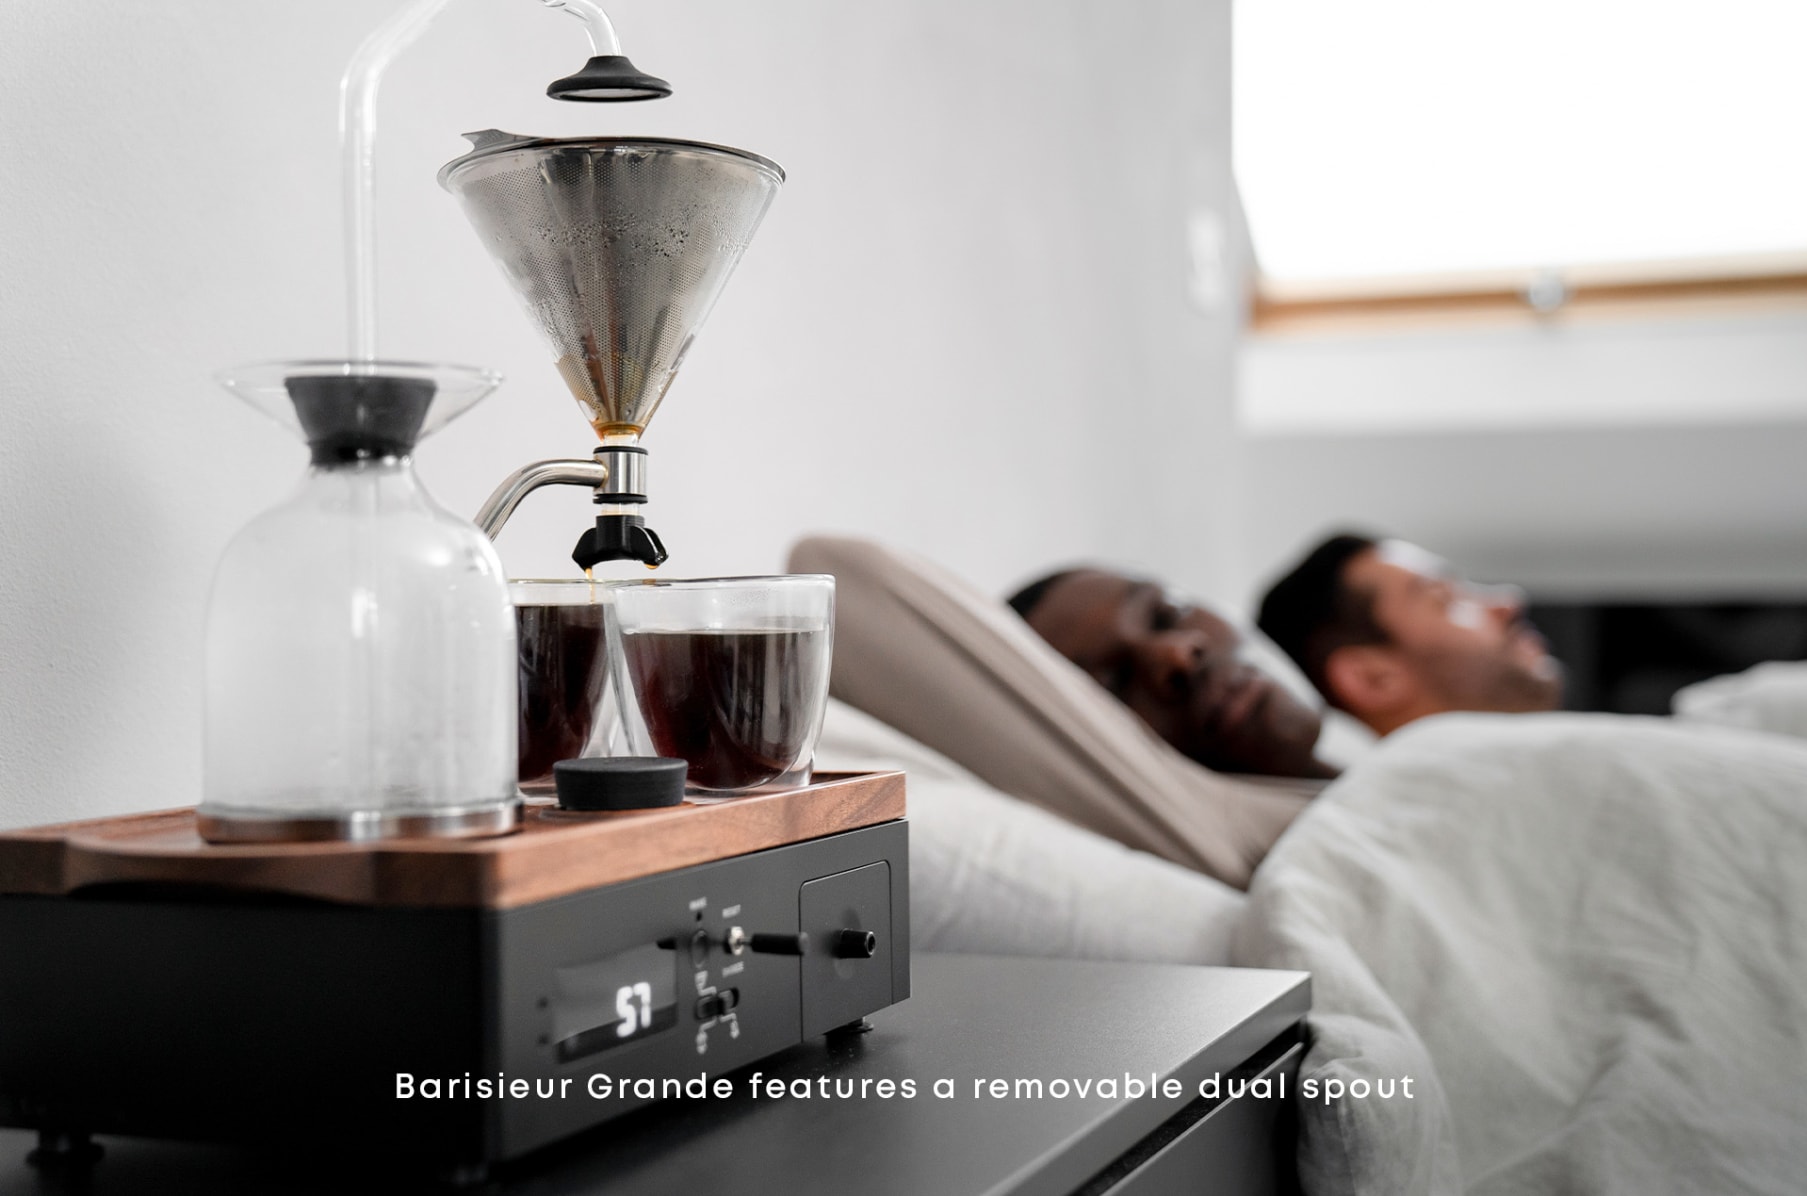 DIY Coffee Alarm Clock 